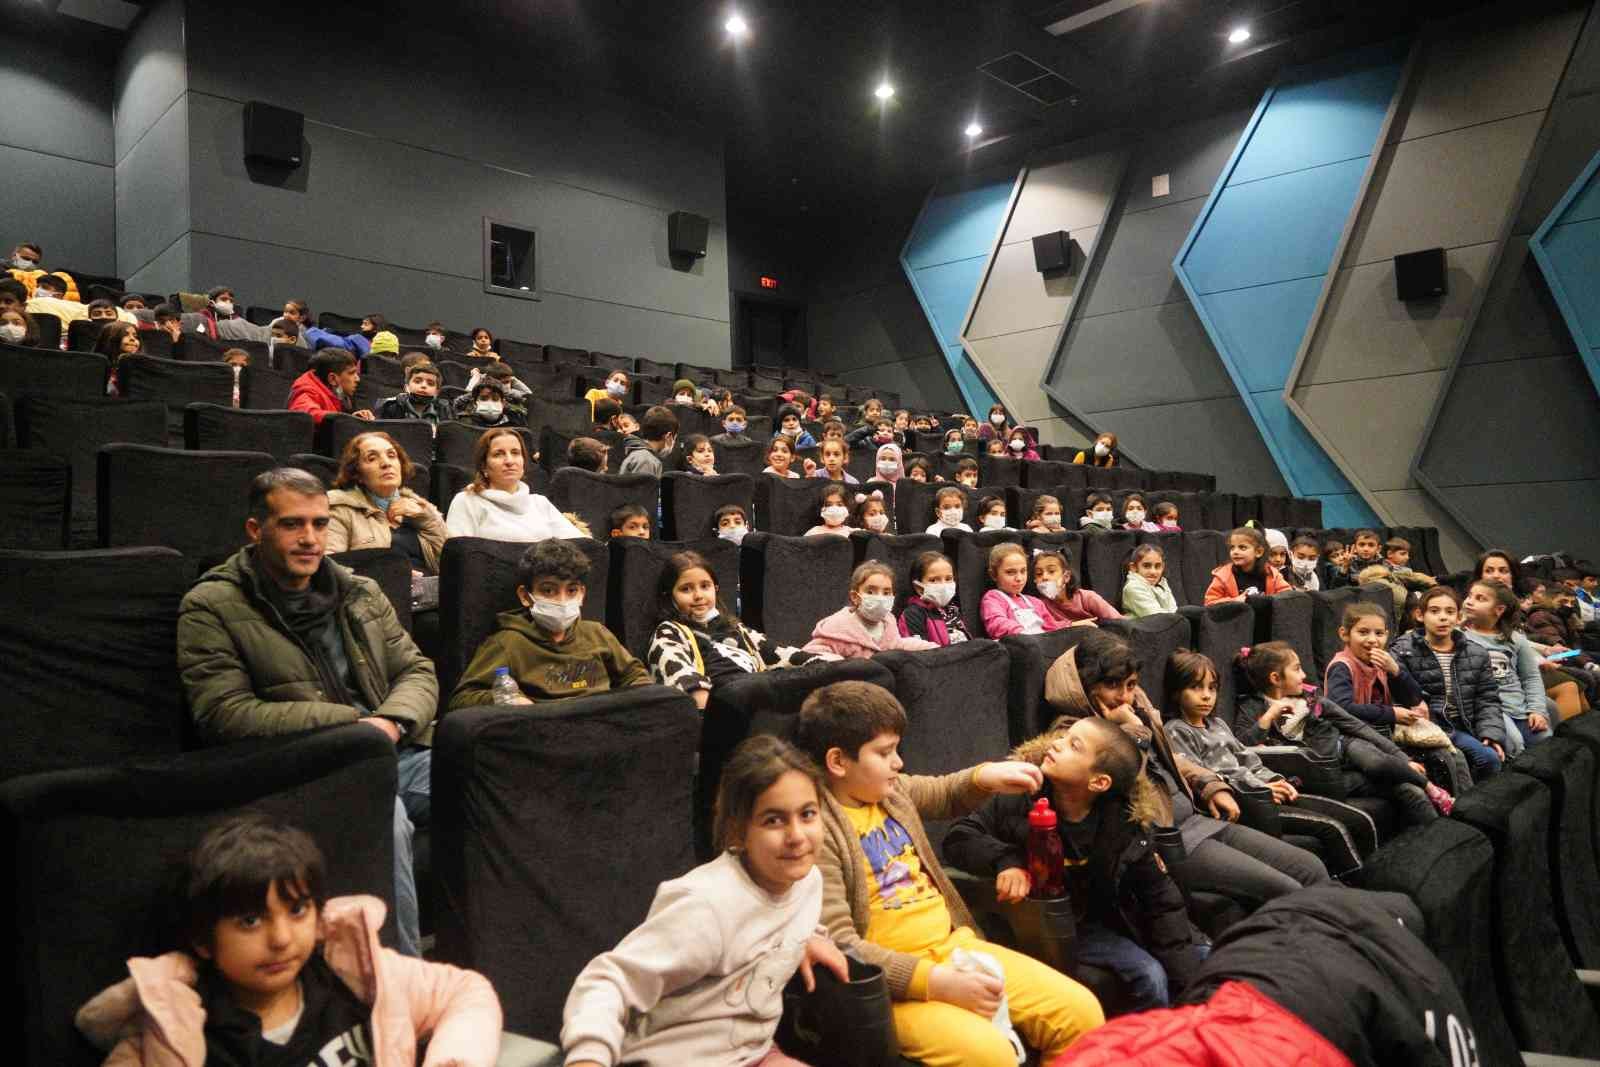 Diyarbakır’da 1 yılda 8 bin 640 öğrenci sinema keyfi yaşadı #diyarbakir